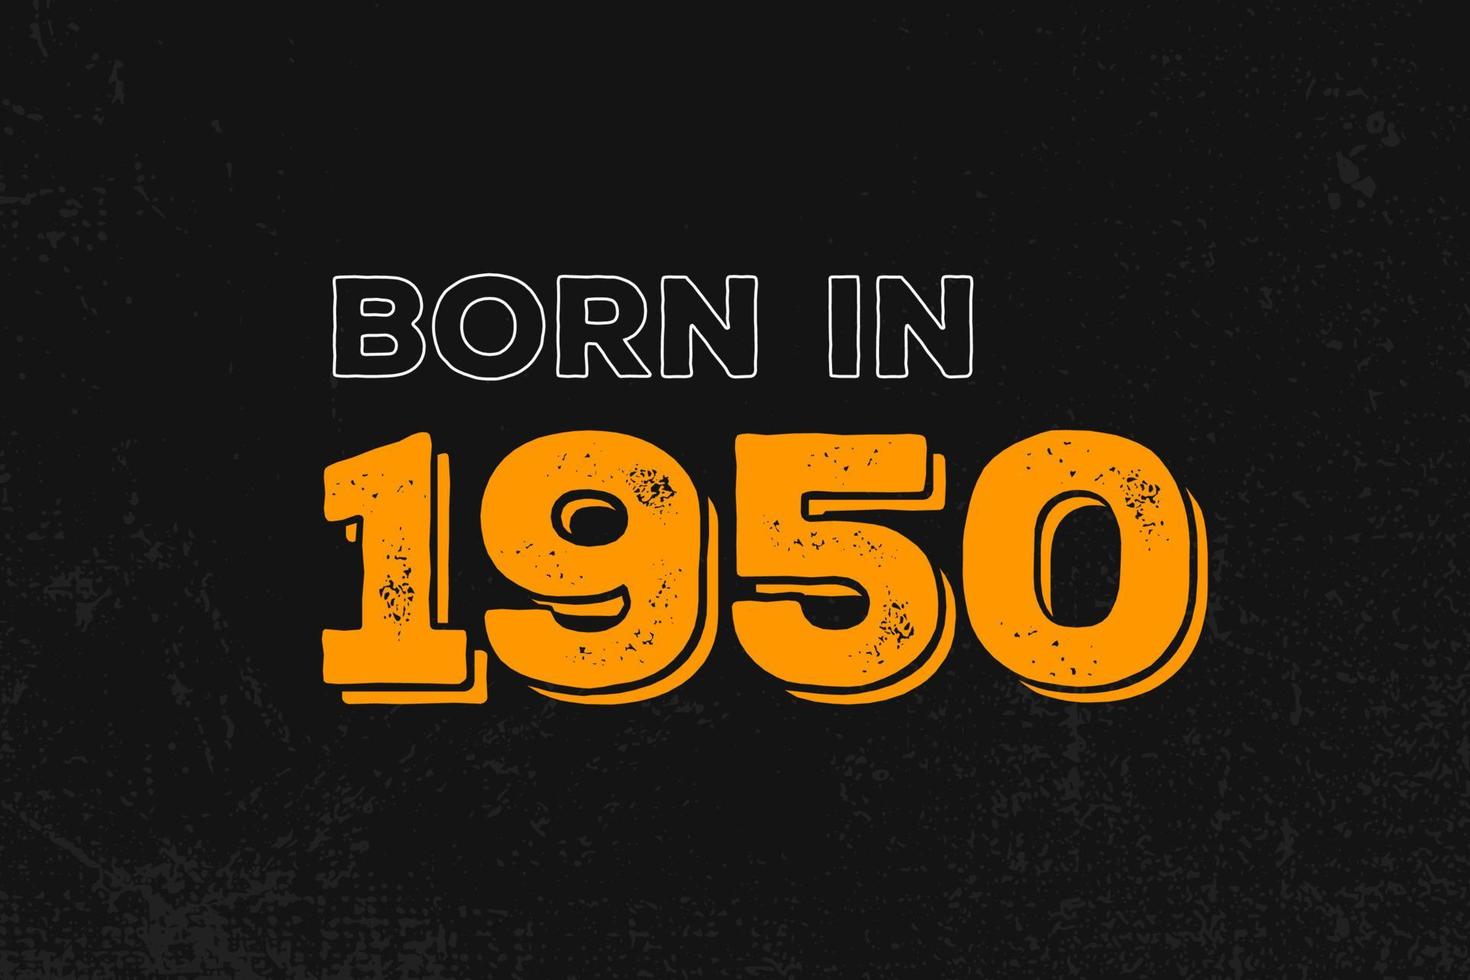 Geboren im Jahr 1950 Geburtstagszitat-Design für die im Jahr 1950 Geborenen vektor